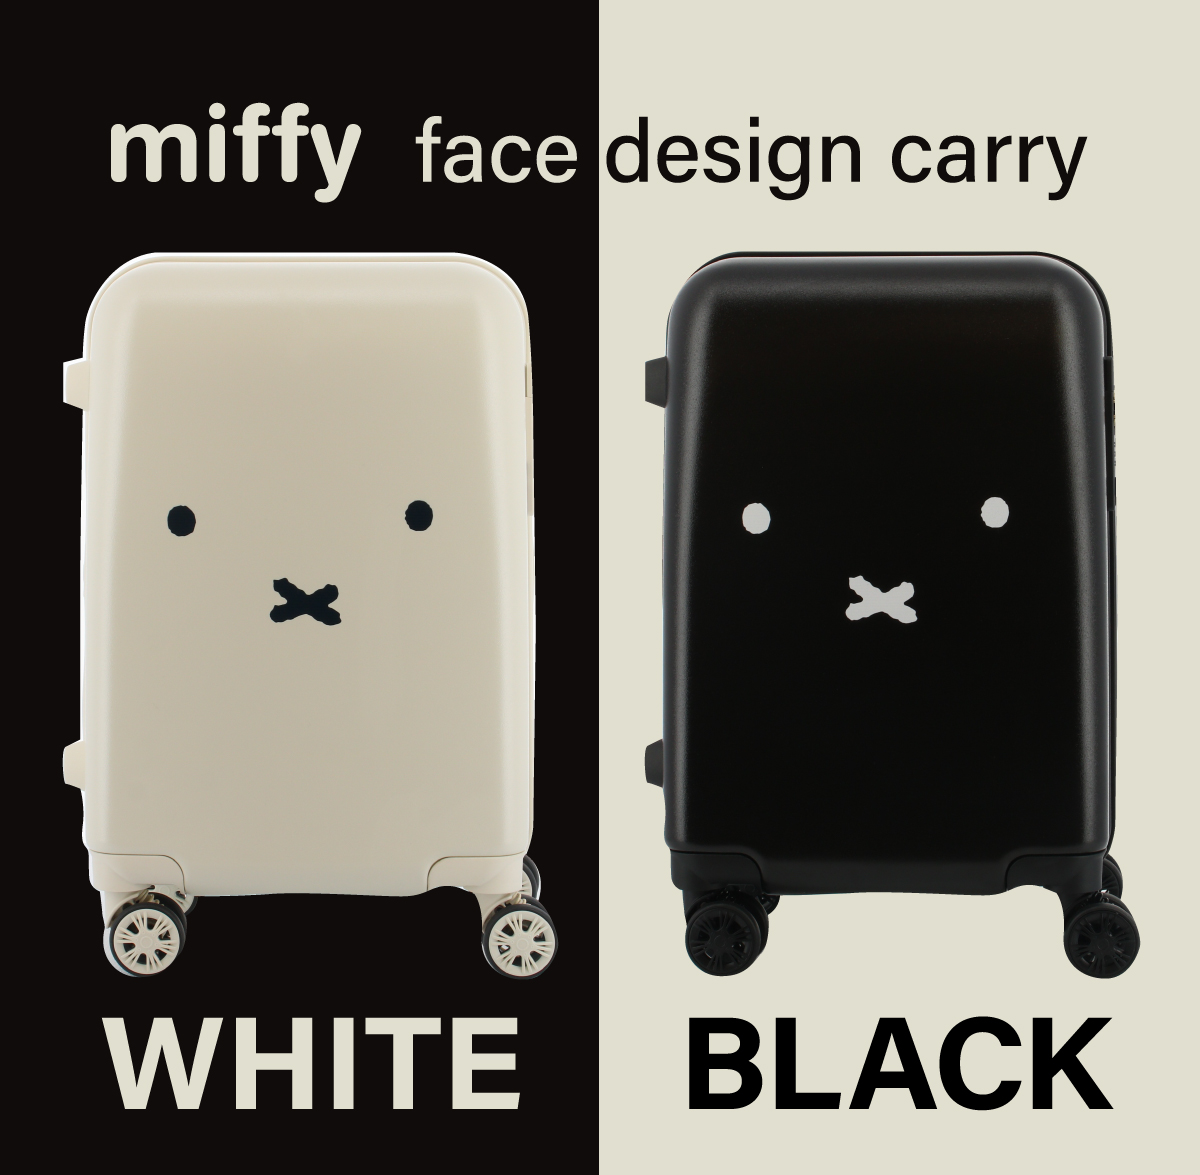 miffyミッフィーのお顔がキュートなフェイスデザインキャリーバッグ新